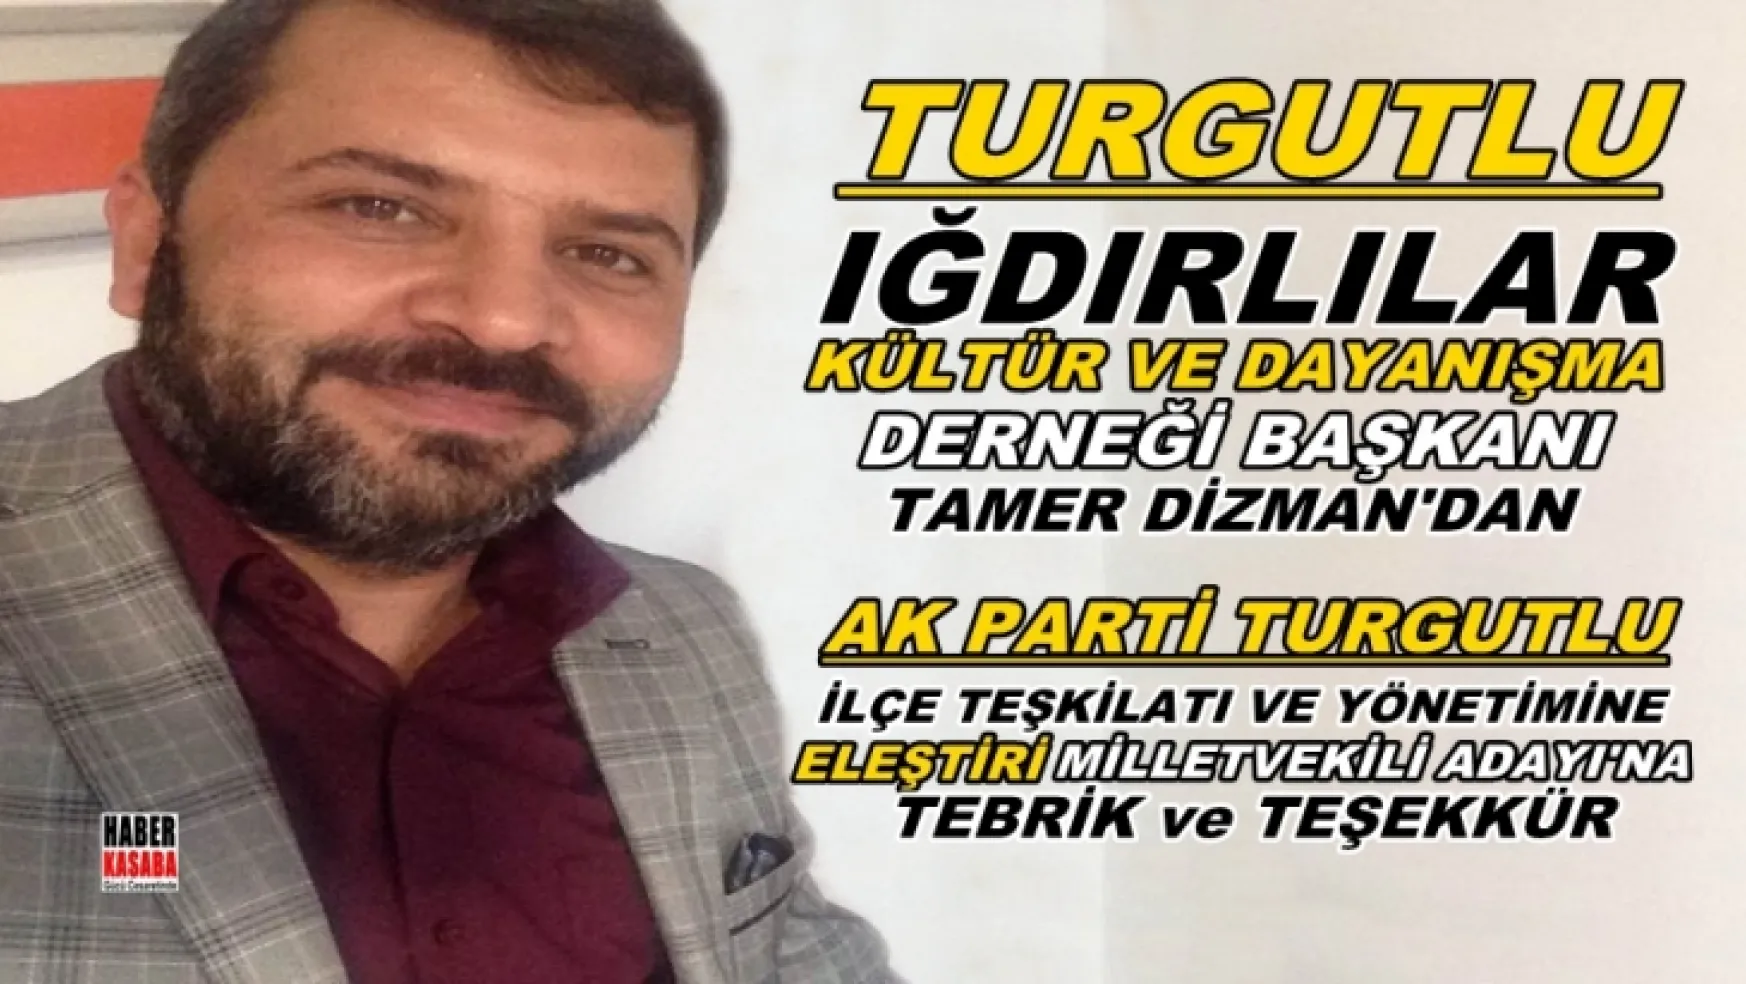 Dizman'dan Partisinin Turgutlu ilçe teşkilatına eleştiri, adayına ise tebrik ve teşekkür